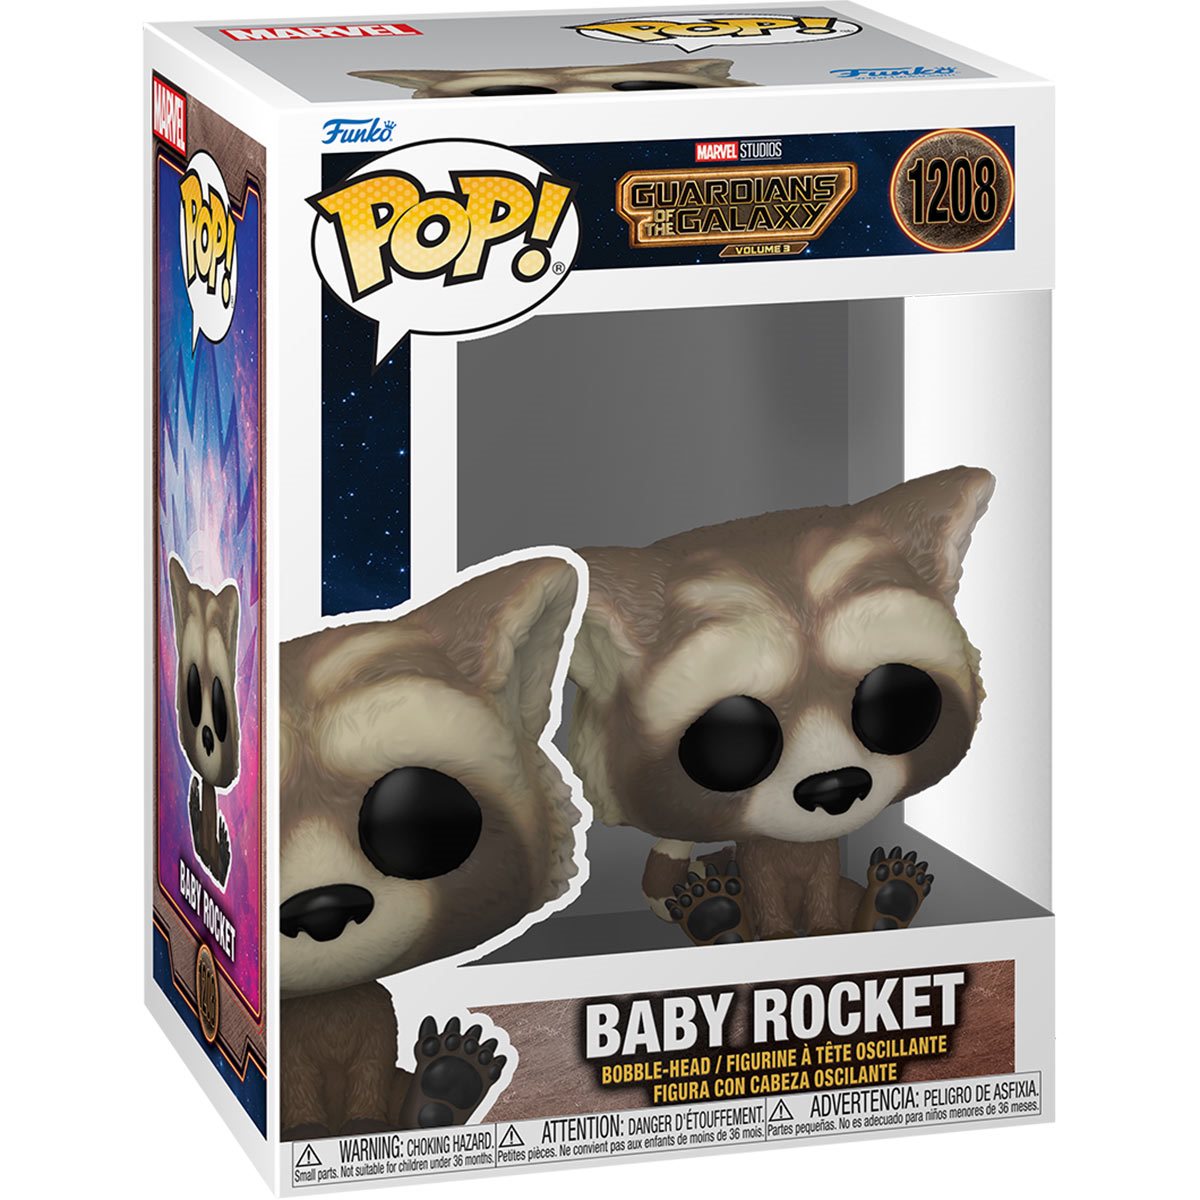 Guardianes de la Galaxia Volumen 3 Baby Rocket Funko Pop